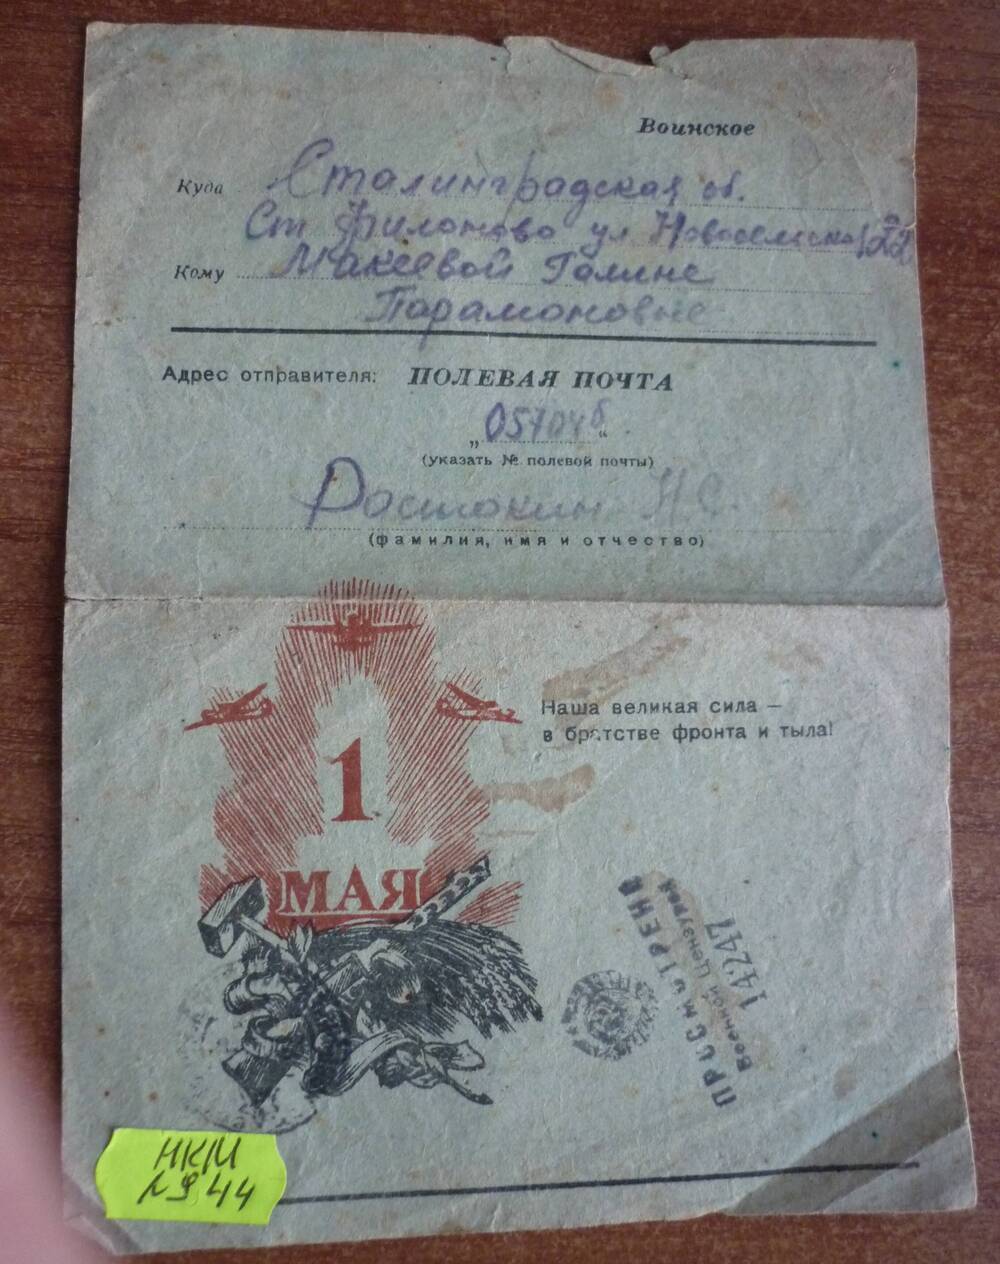 Письмо воинское от Ростокина Н.С.  Макеевой Г.П. Полевая почта 05704 б